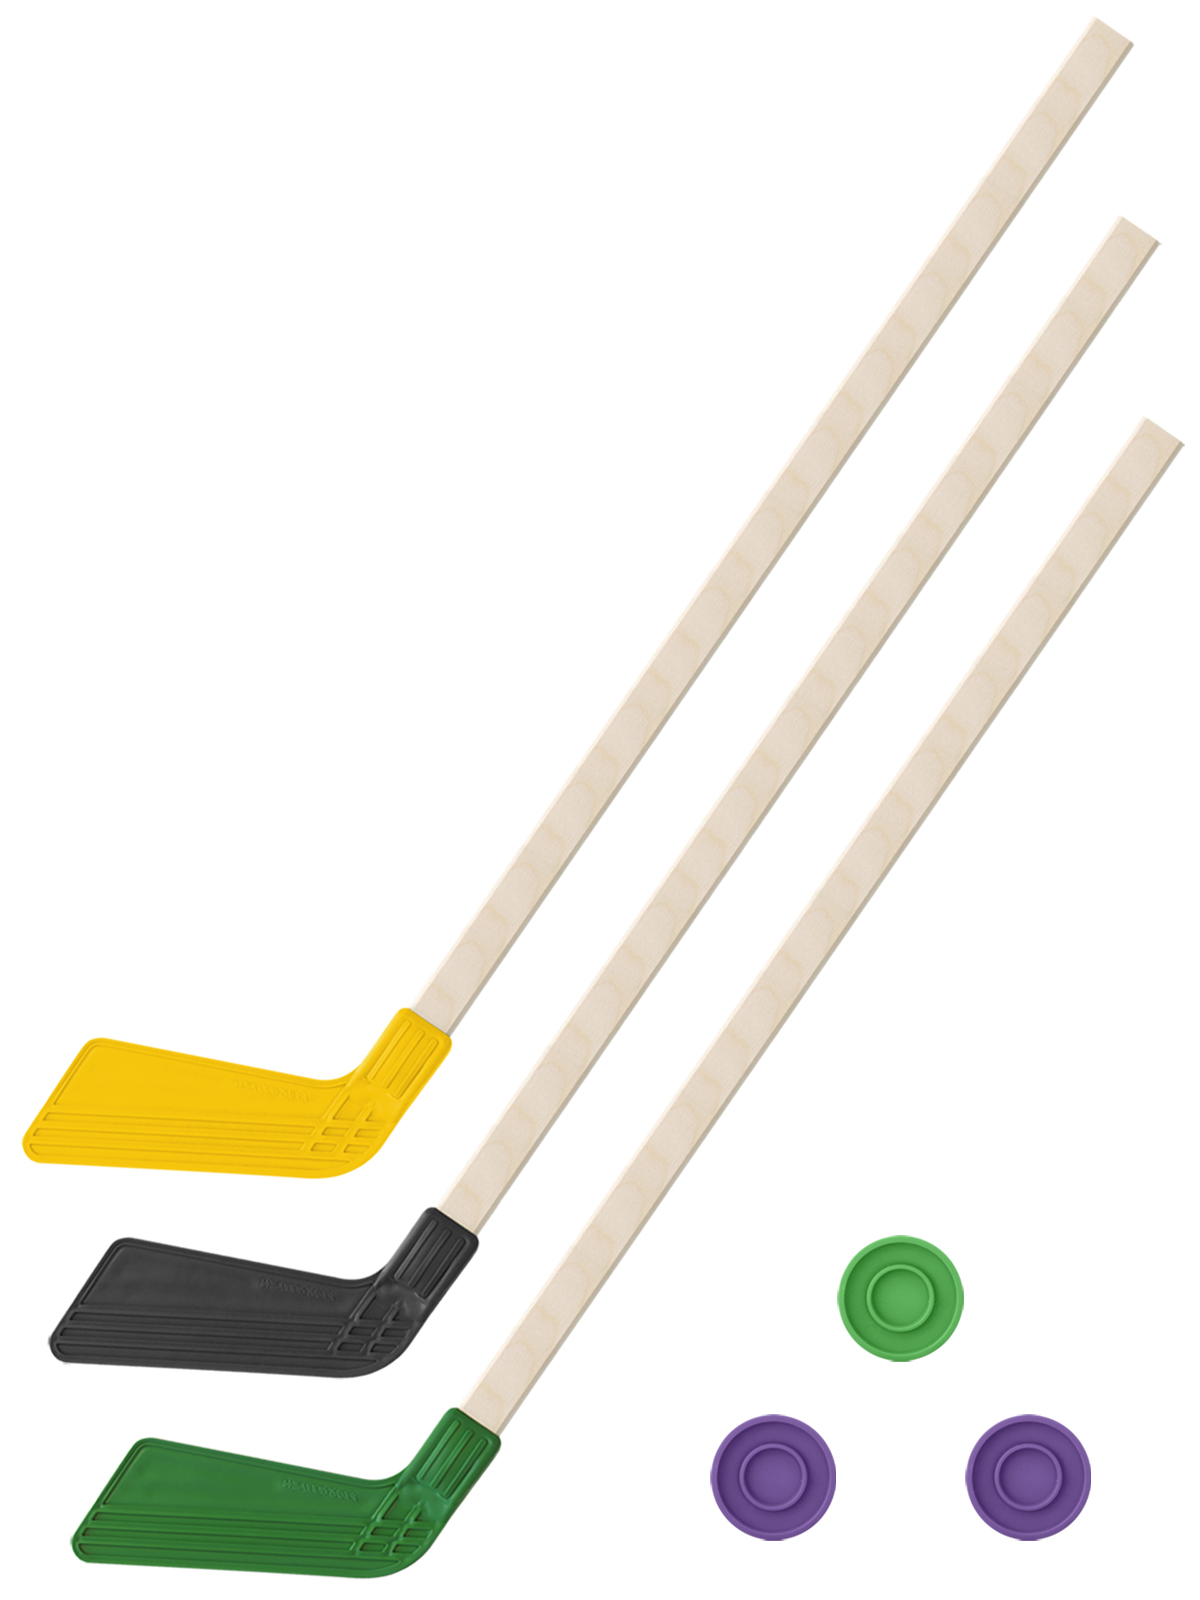 Детский хоккейный набор Задира-плюс 3 в 1 Клюшка хоккейная 80см (жел,черн,зел) + 3 шайбы детский хоккейный набор задира плюс 3 в 1 клюшка хоккейная 80 см син чёрн жел 3 шайбы